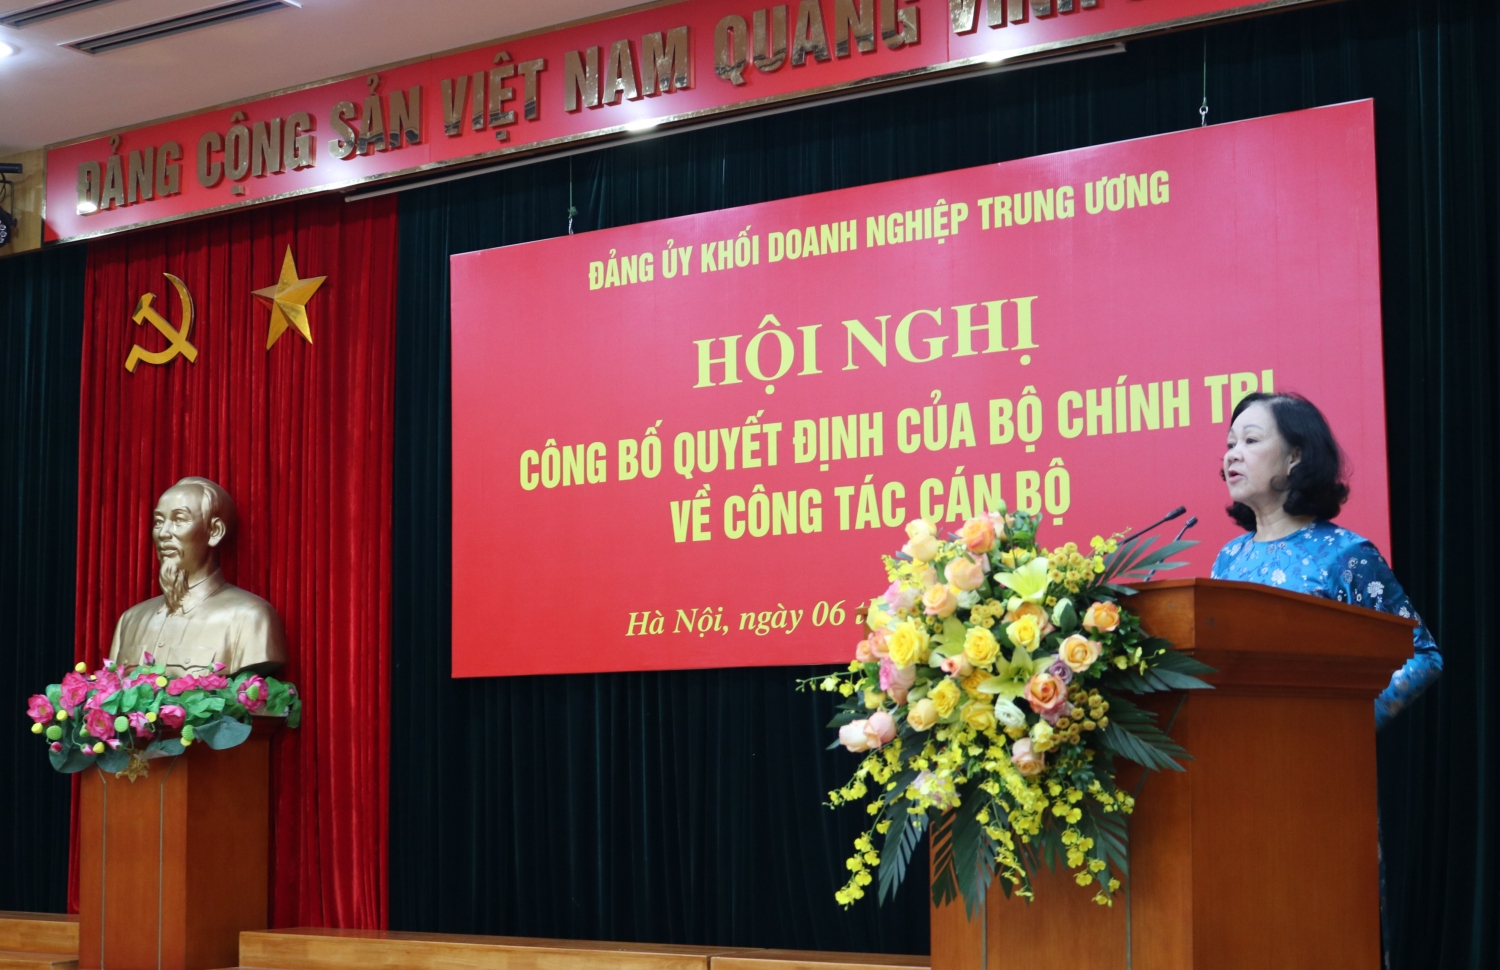 Đồng chí Nguyễn Long Hải giữ chức Bí thư Đảng uỷ Khối Doanh nghiệp Trung ương